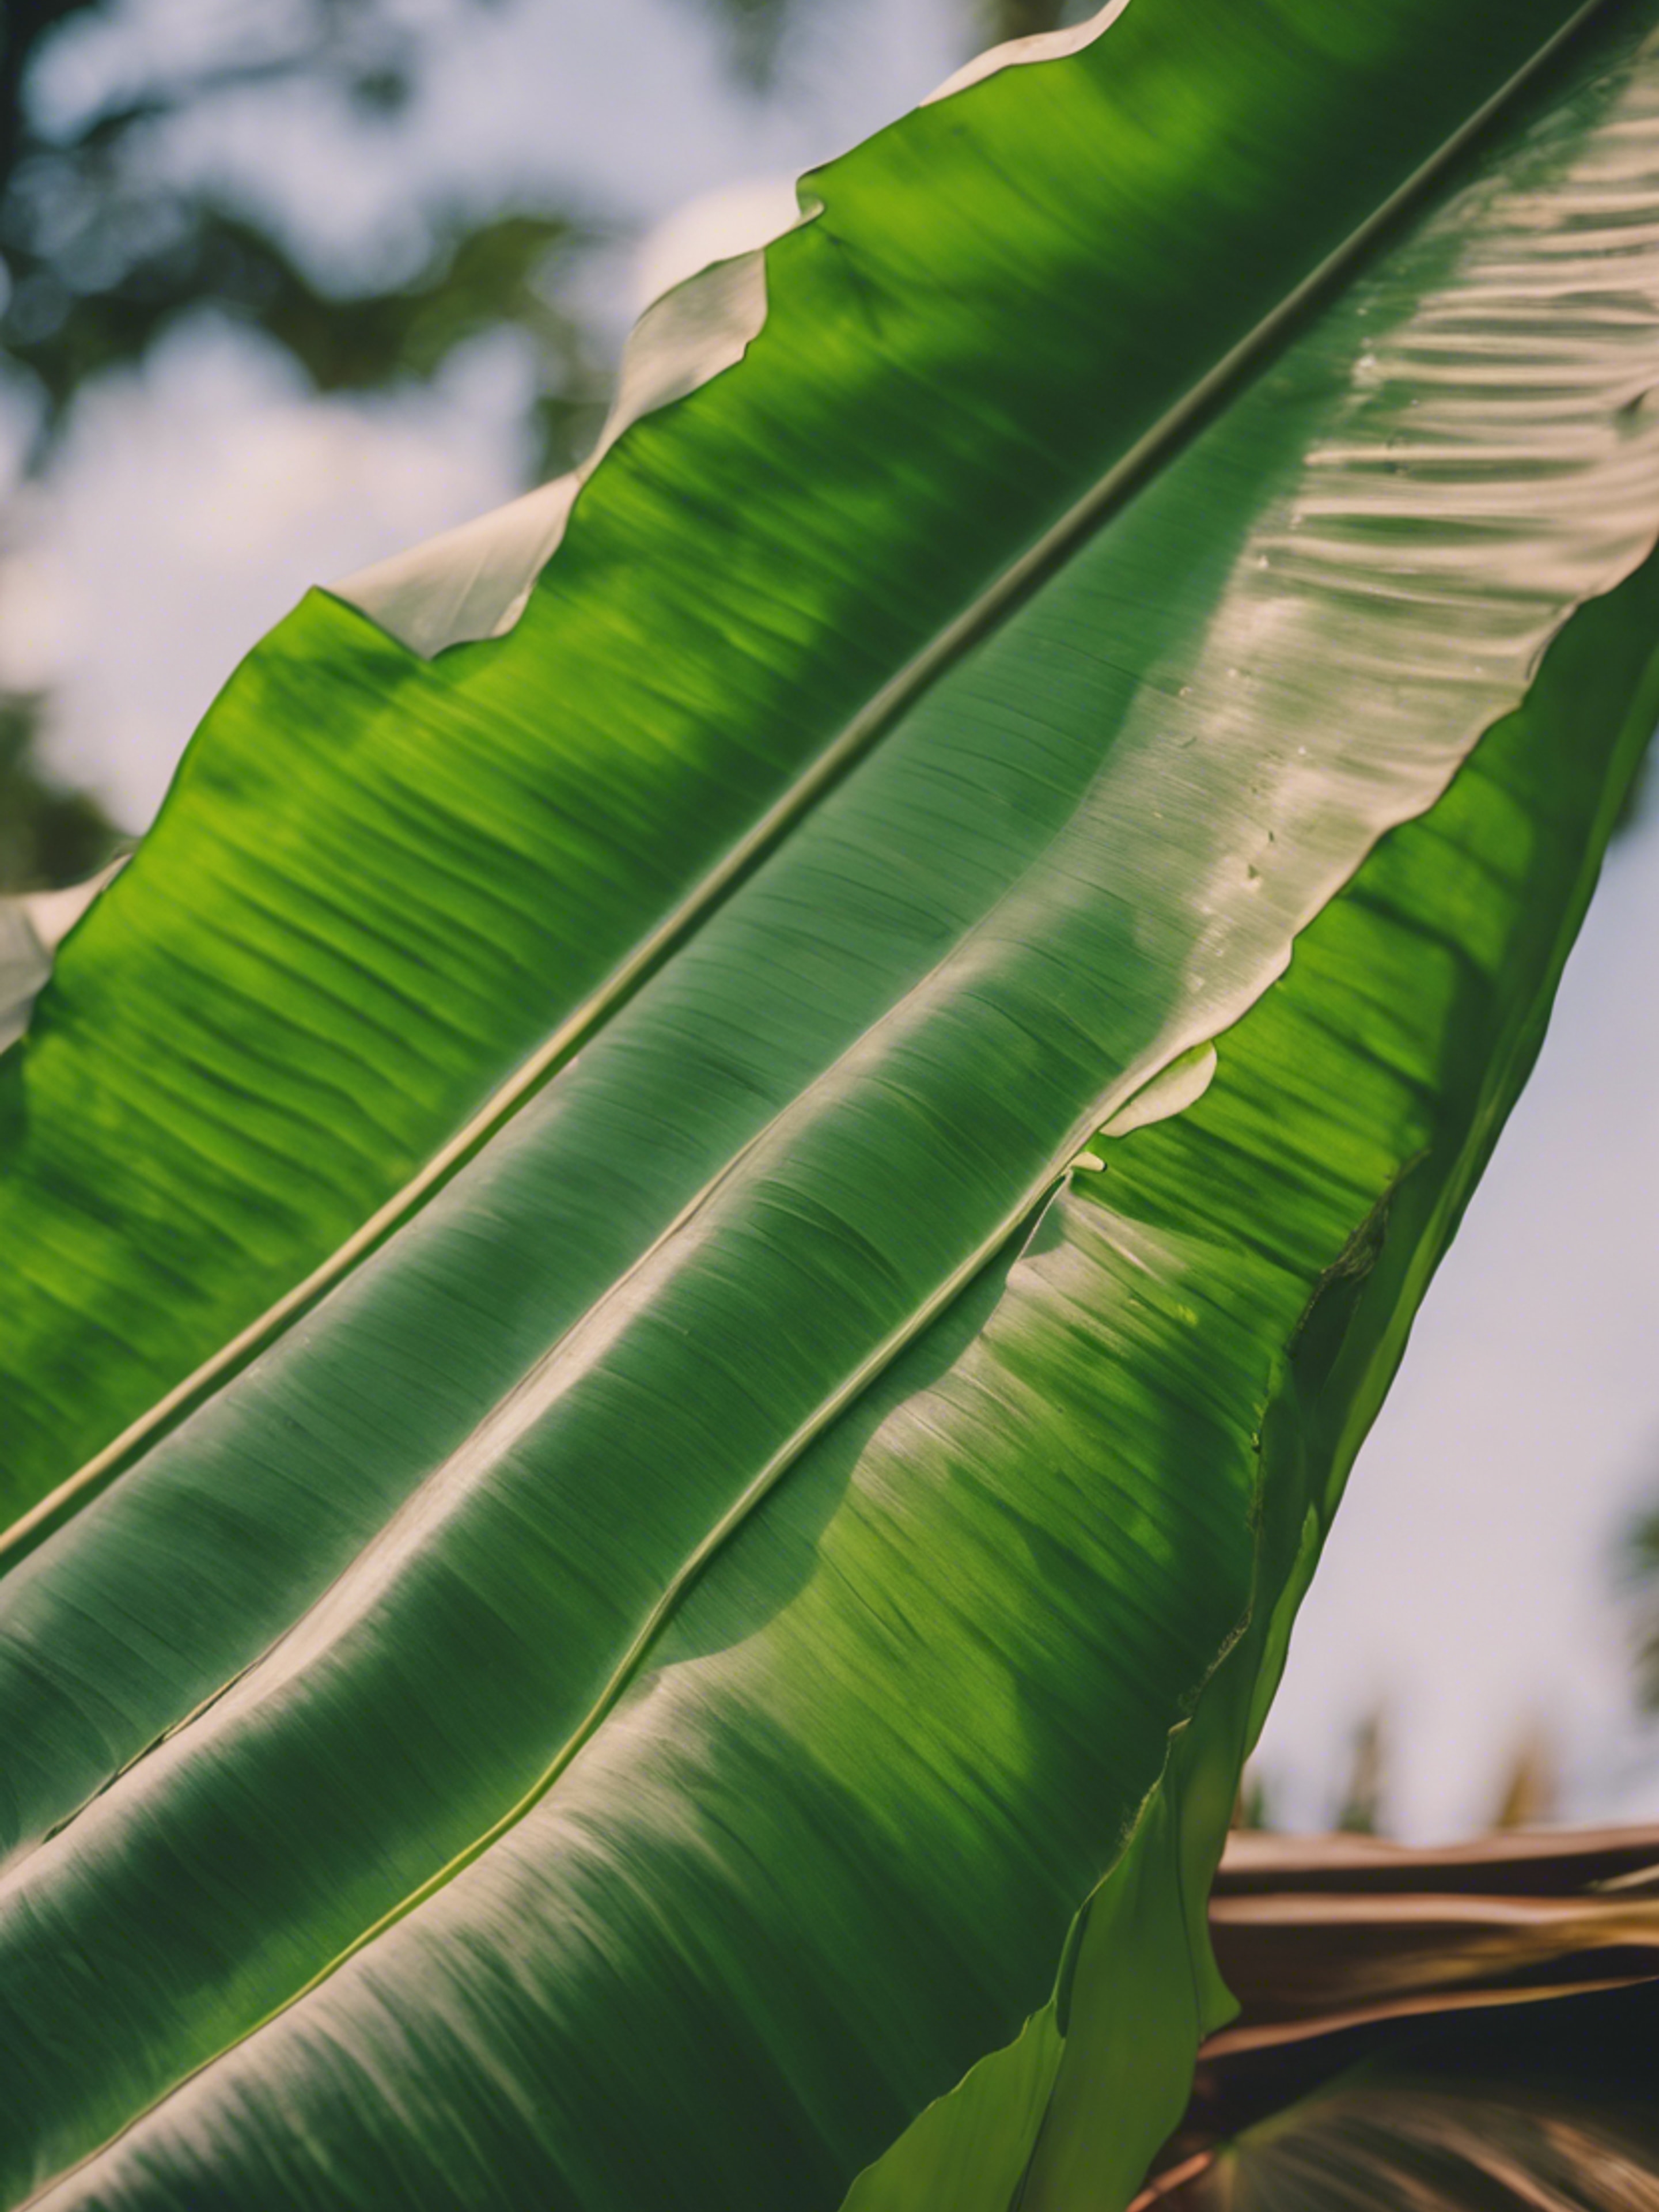 A banana leaf fashioned into a simple but sturdy homemade kite. 벽지[67483886efc74c5189dd]